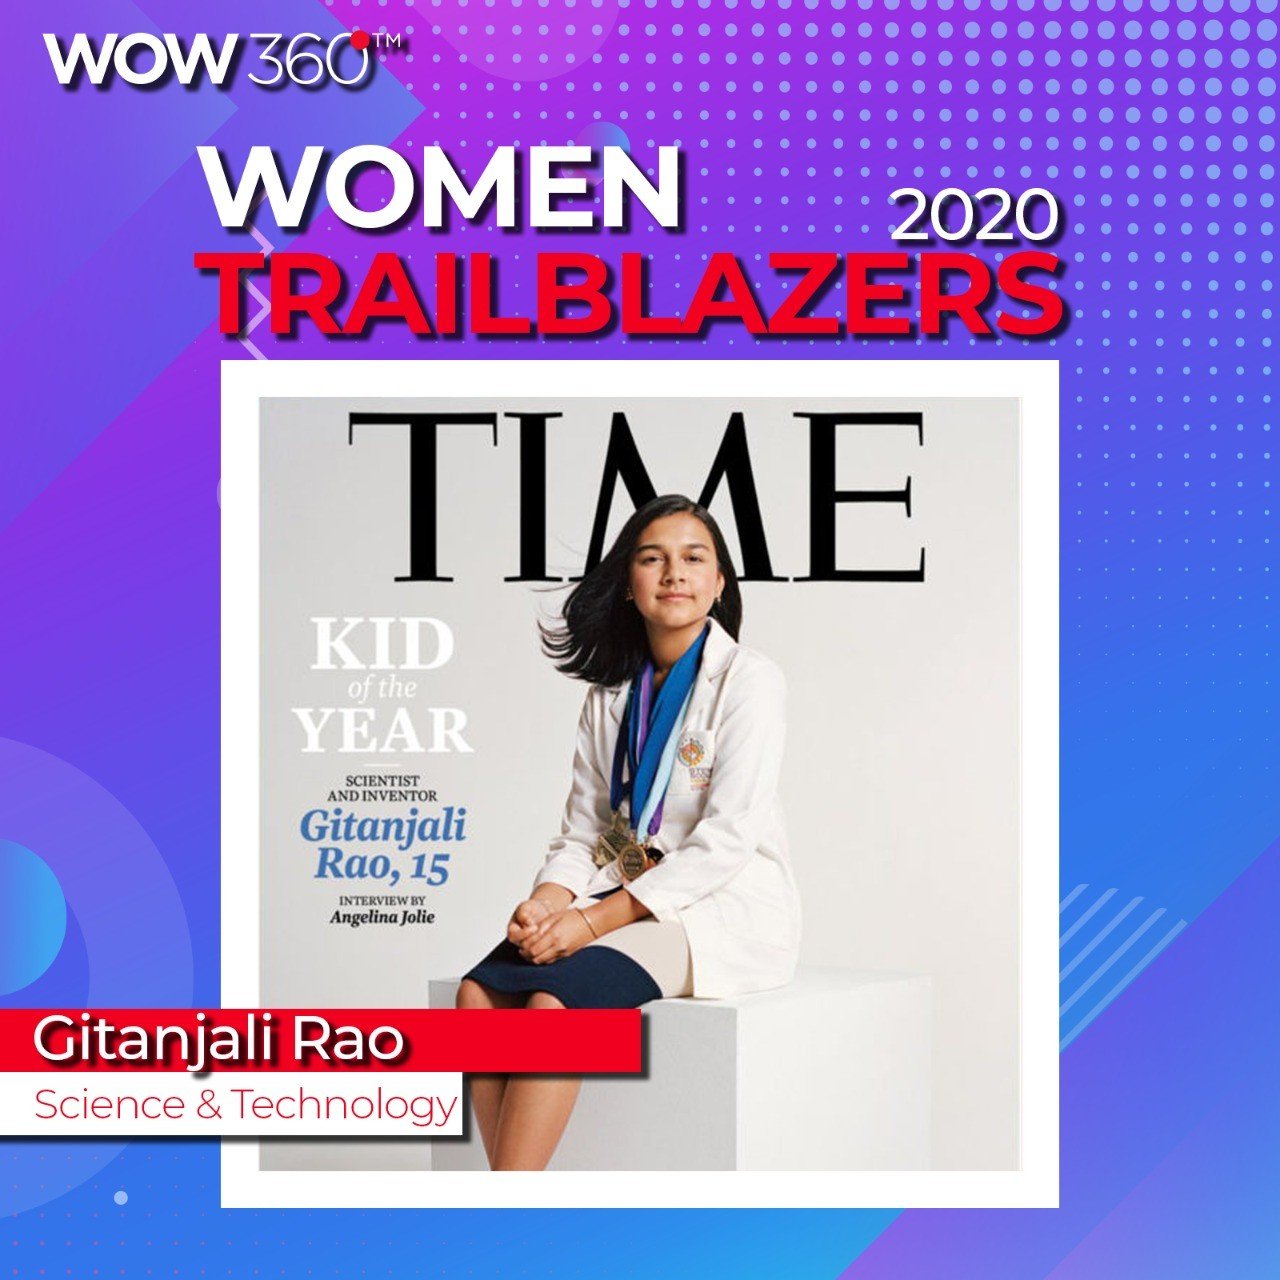 WOW 360|WOW360 Trailblazer's List for Women Achievers 2020